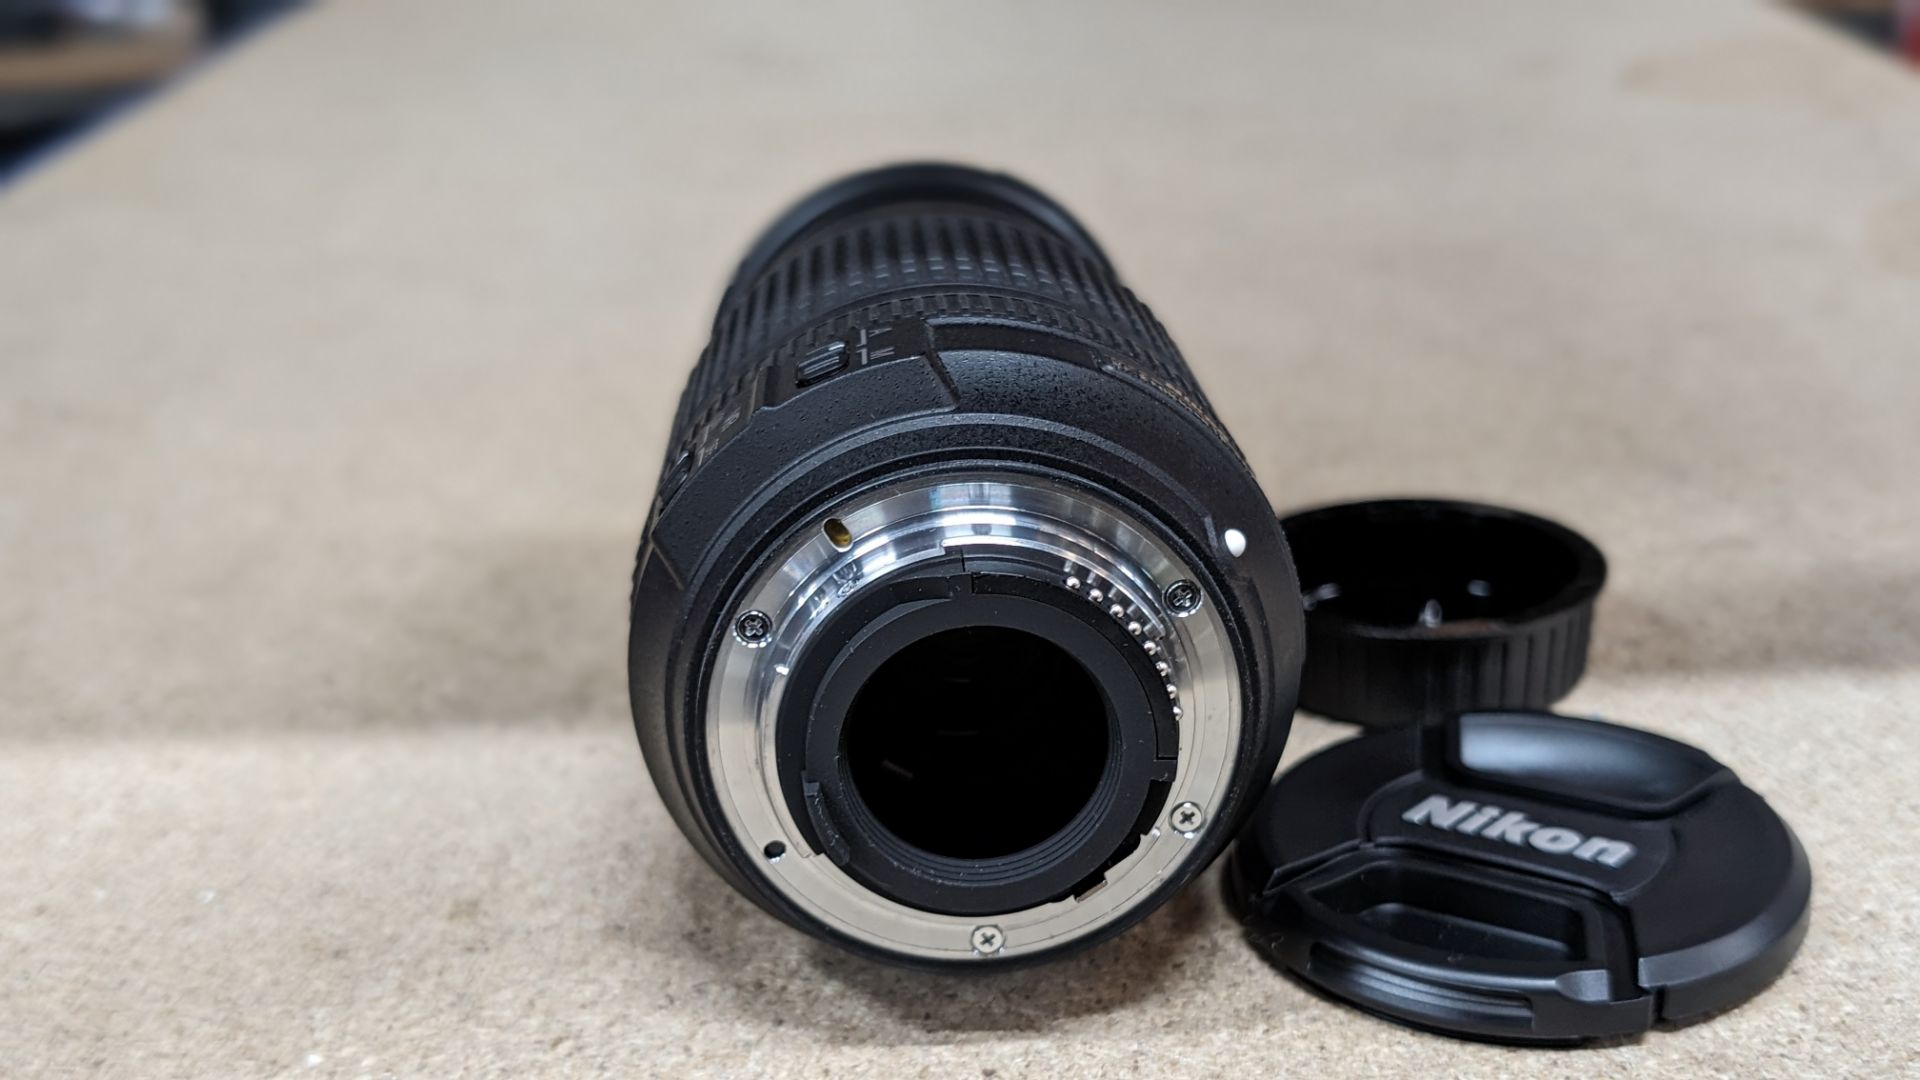 Nikon Nikkor lens AF-S DX Nikkor 18-140mm 1:3.5-5.6G ED VR - Bild 5 aus 13